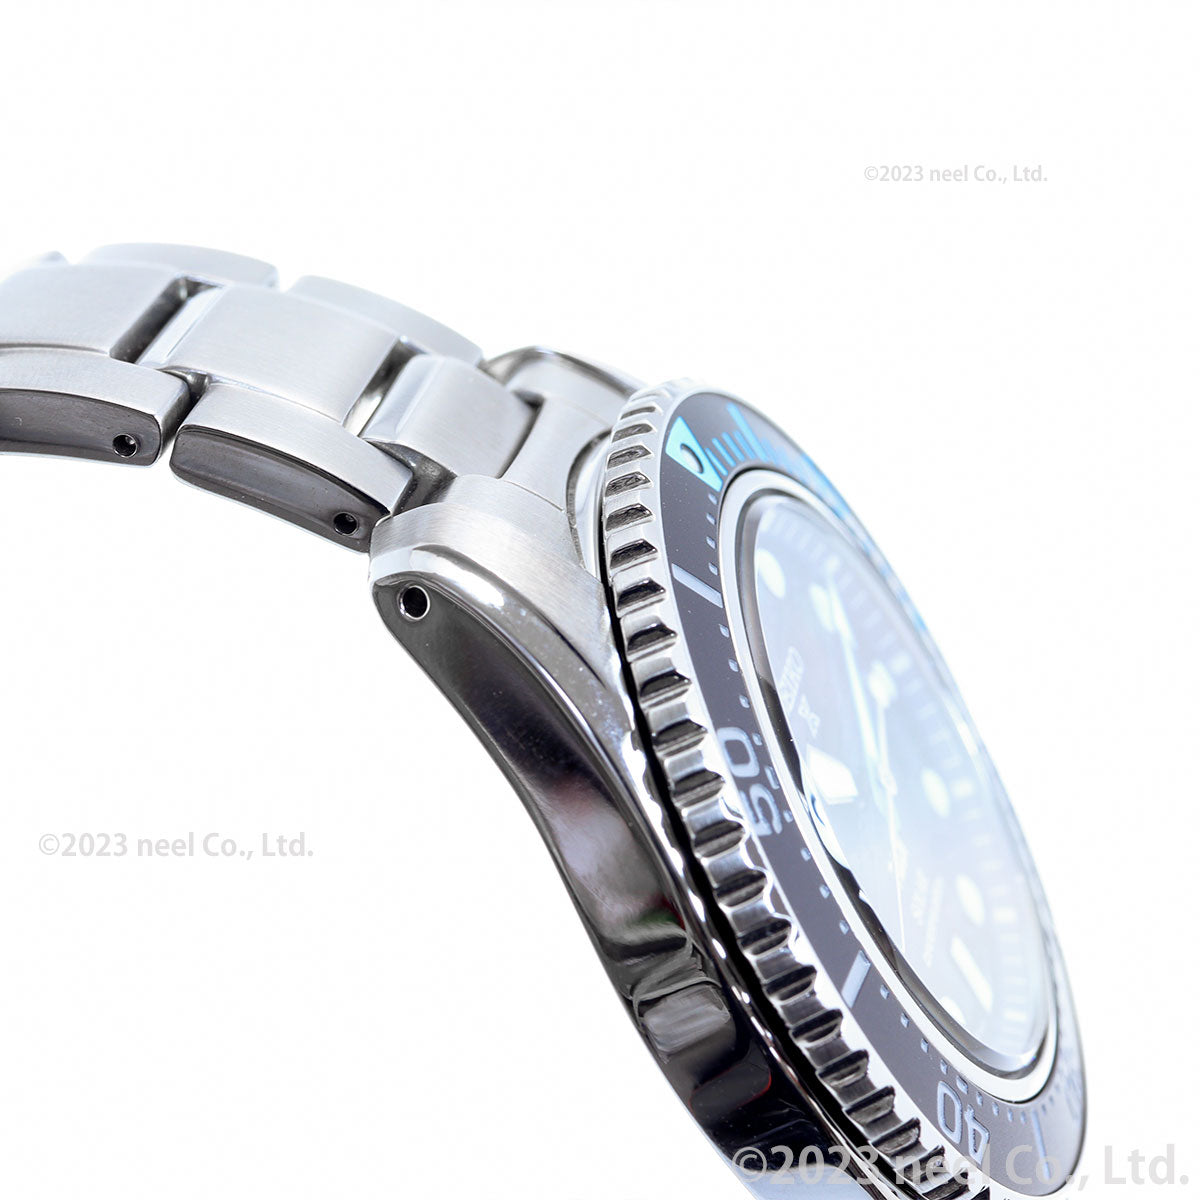 セイコー プロスペックス SEIKO PROSPEX ダイバースキューバ ソーラー PADIスペシャルモデル 腕時計 メンズ SBDJ057